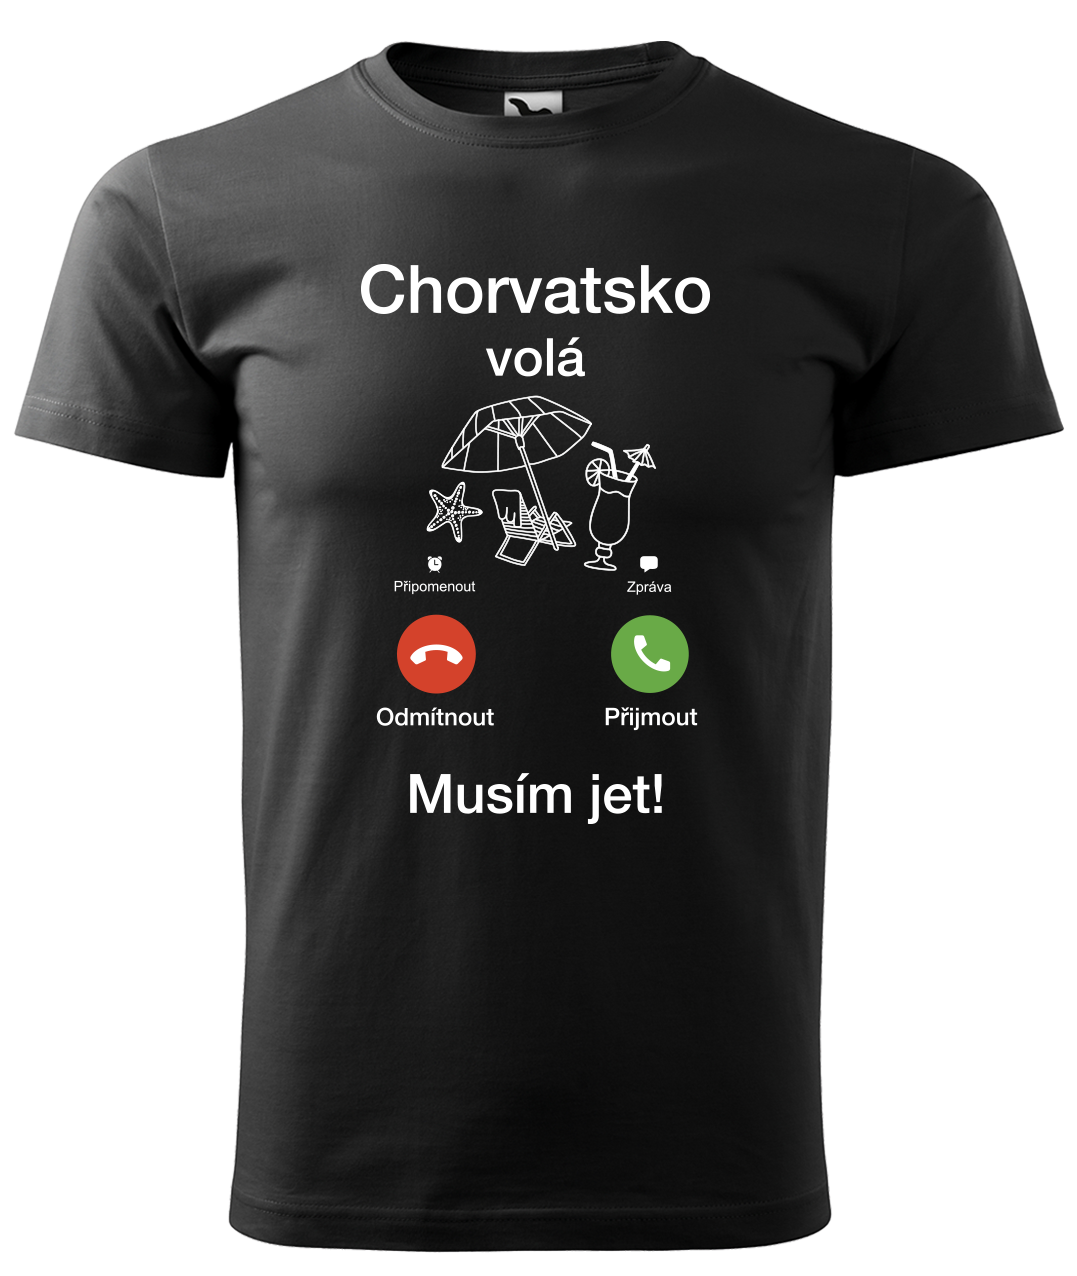 Dětské cestovatelské tričko - Chorvatsko volá - musím jet! Velikost: 8 let / 134 cm, Barva: Černá (01)